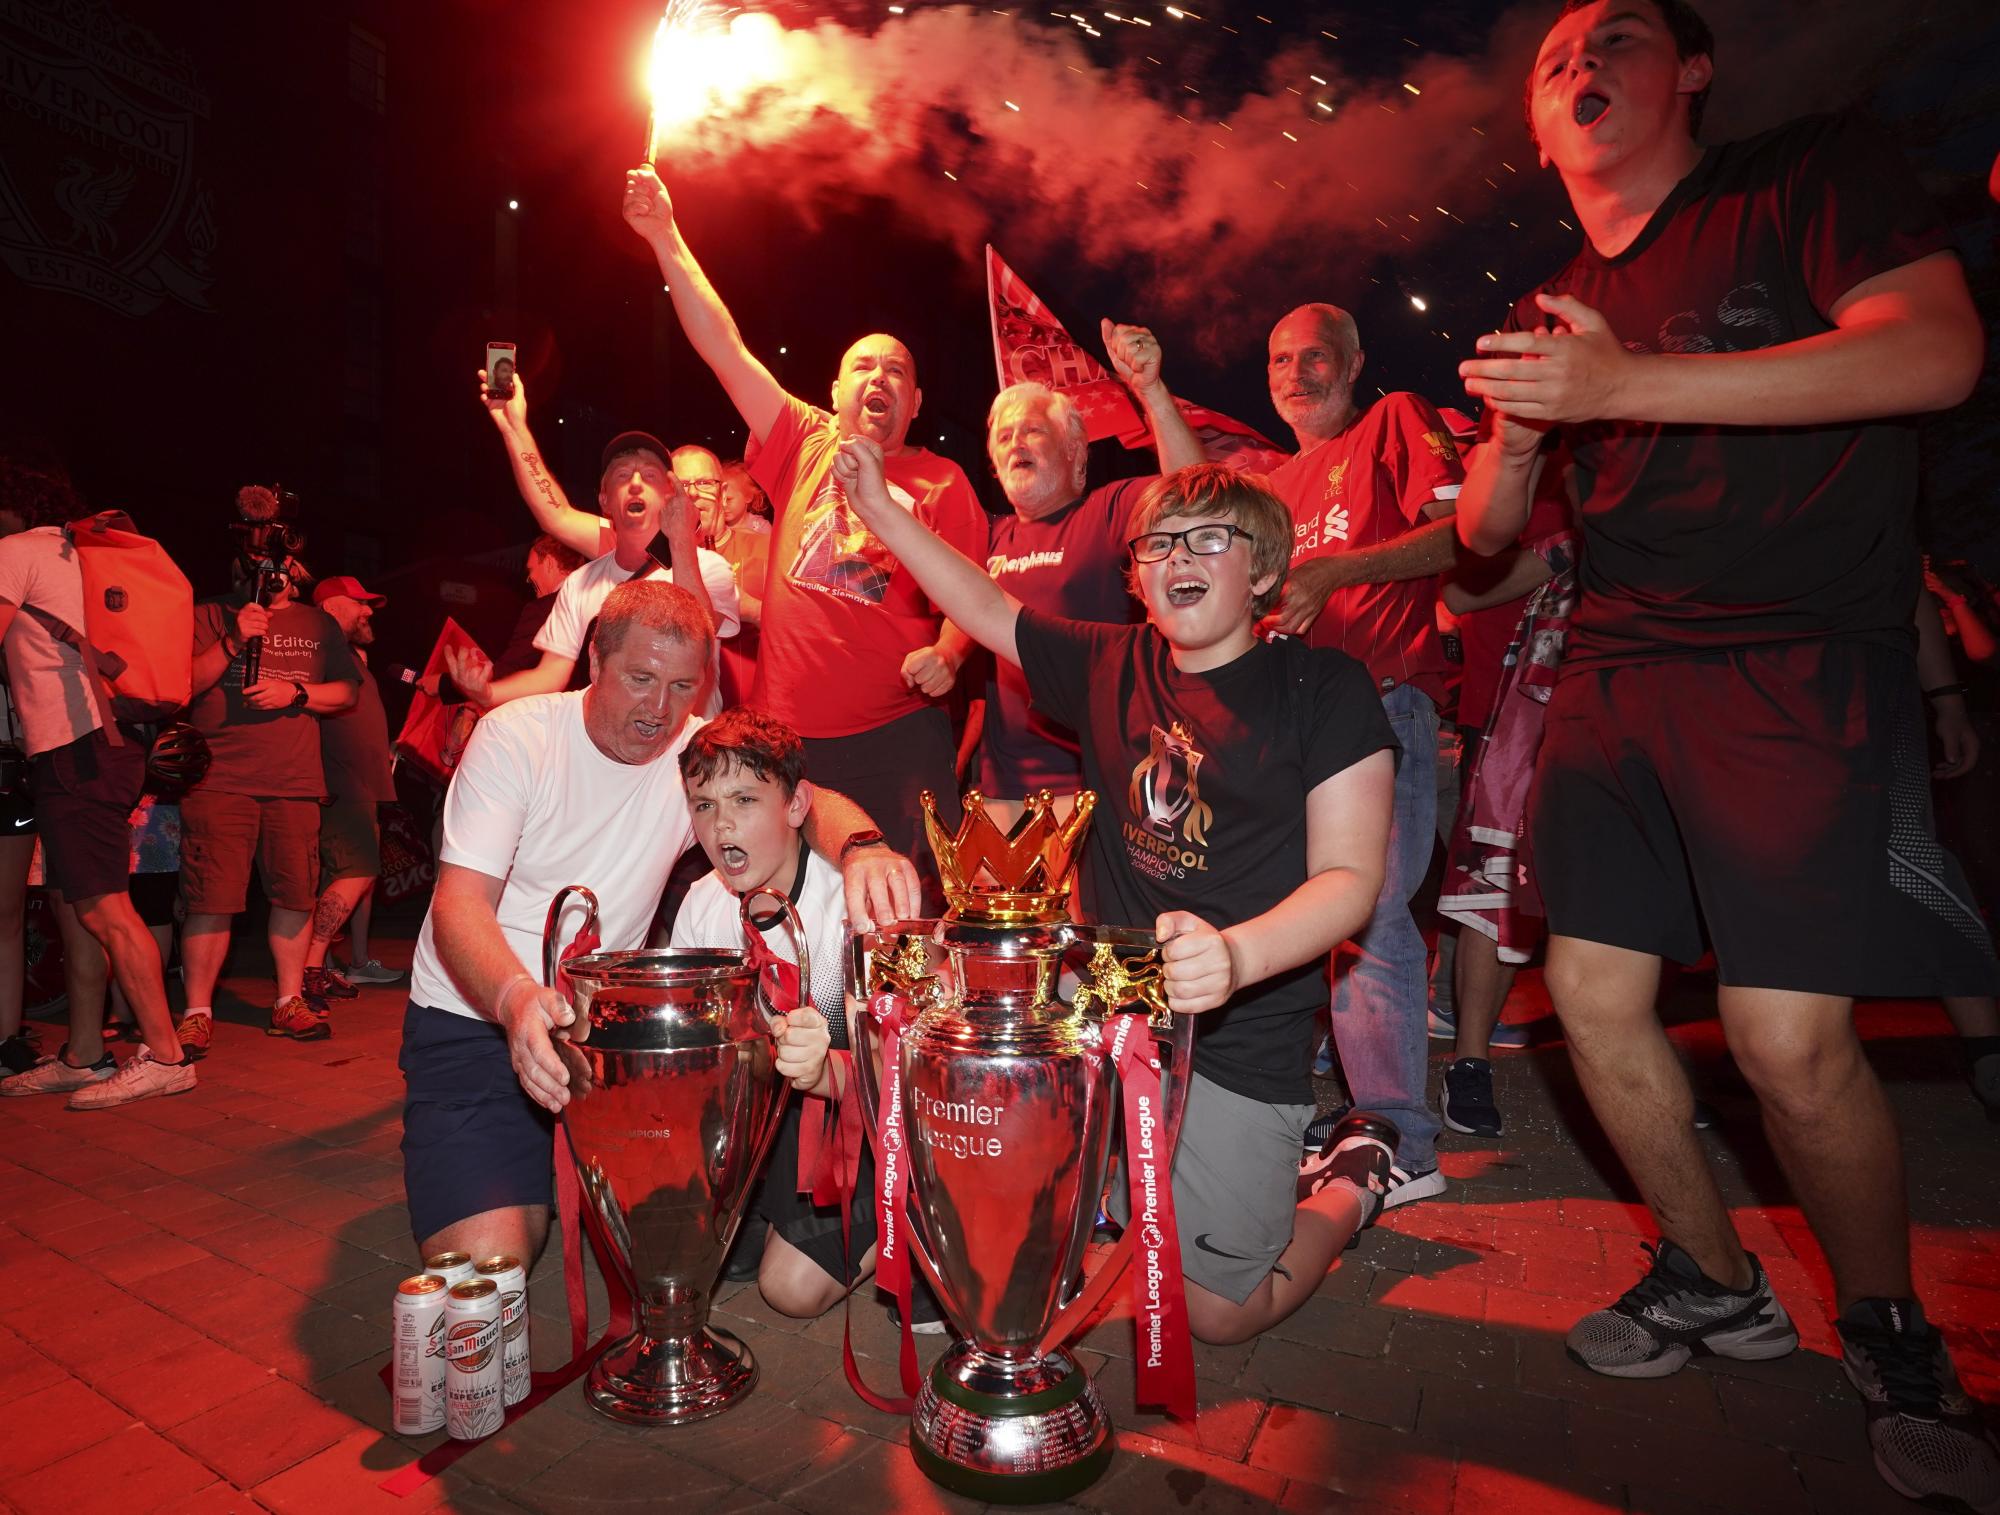 Un grupo de fanáticos celebra junto a una réplica de la copa de la Premier League, en las afueras del Anfield Stadium durante la celebración decimonoveno título de su club en la liga inglesa  (AP photo/Jon Super)